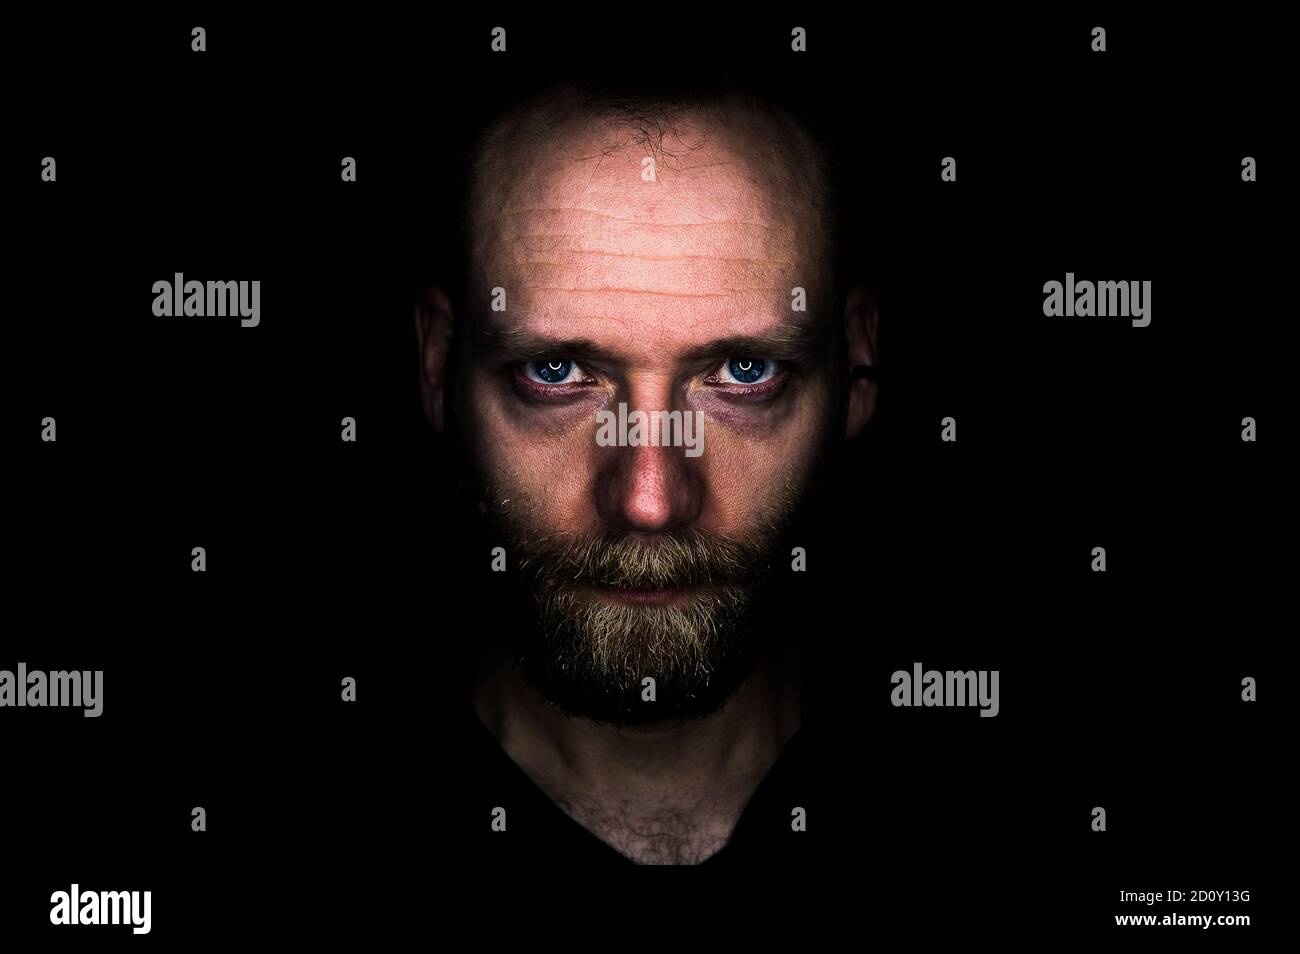 Un uomo guarda seriamente nella macchina fotografica dall'oscurità. Il suo sguardo è minaccioso e determinato. Foto Stock